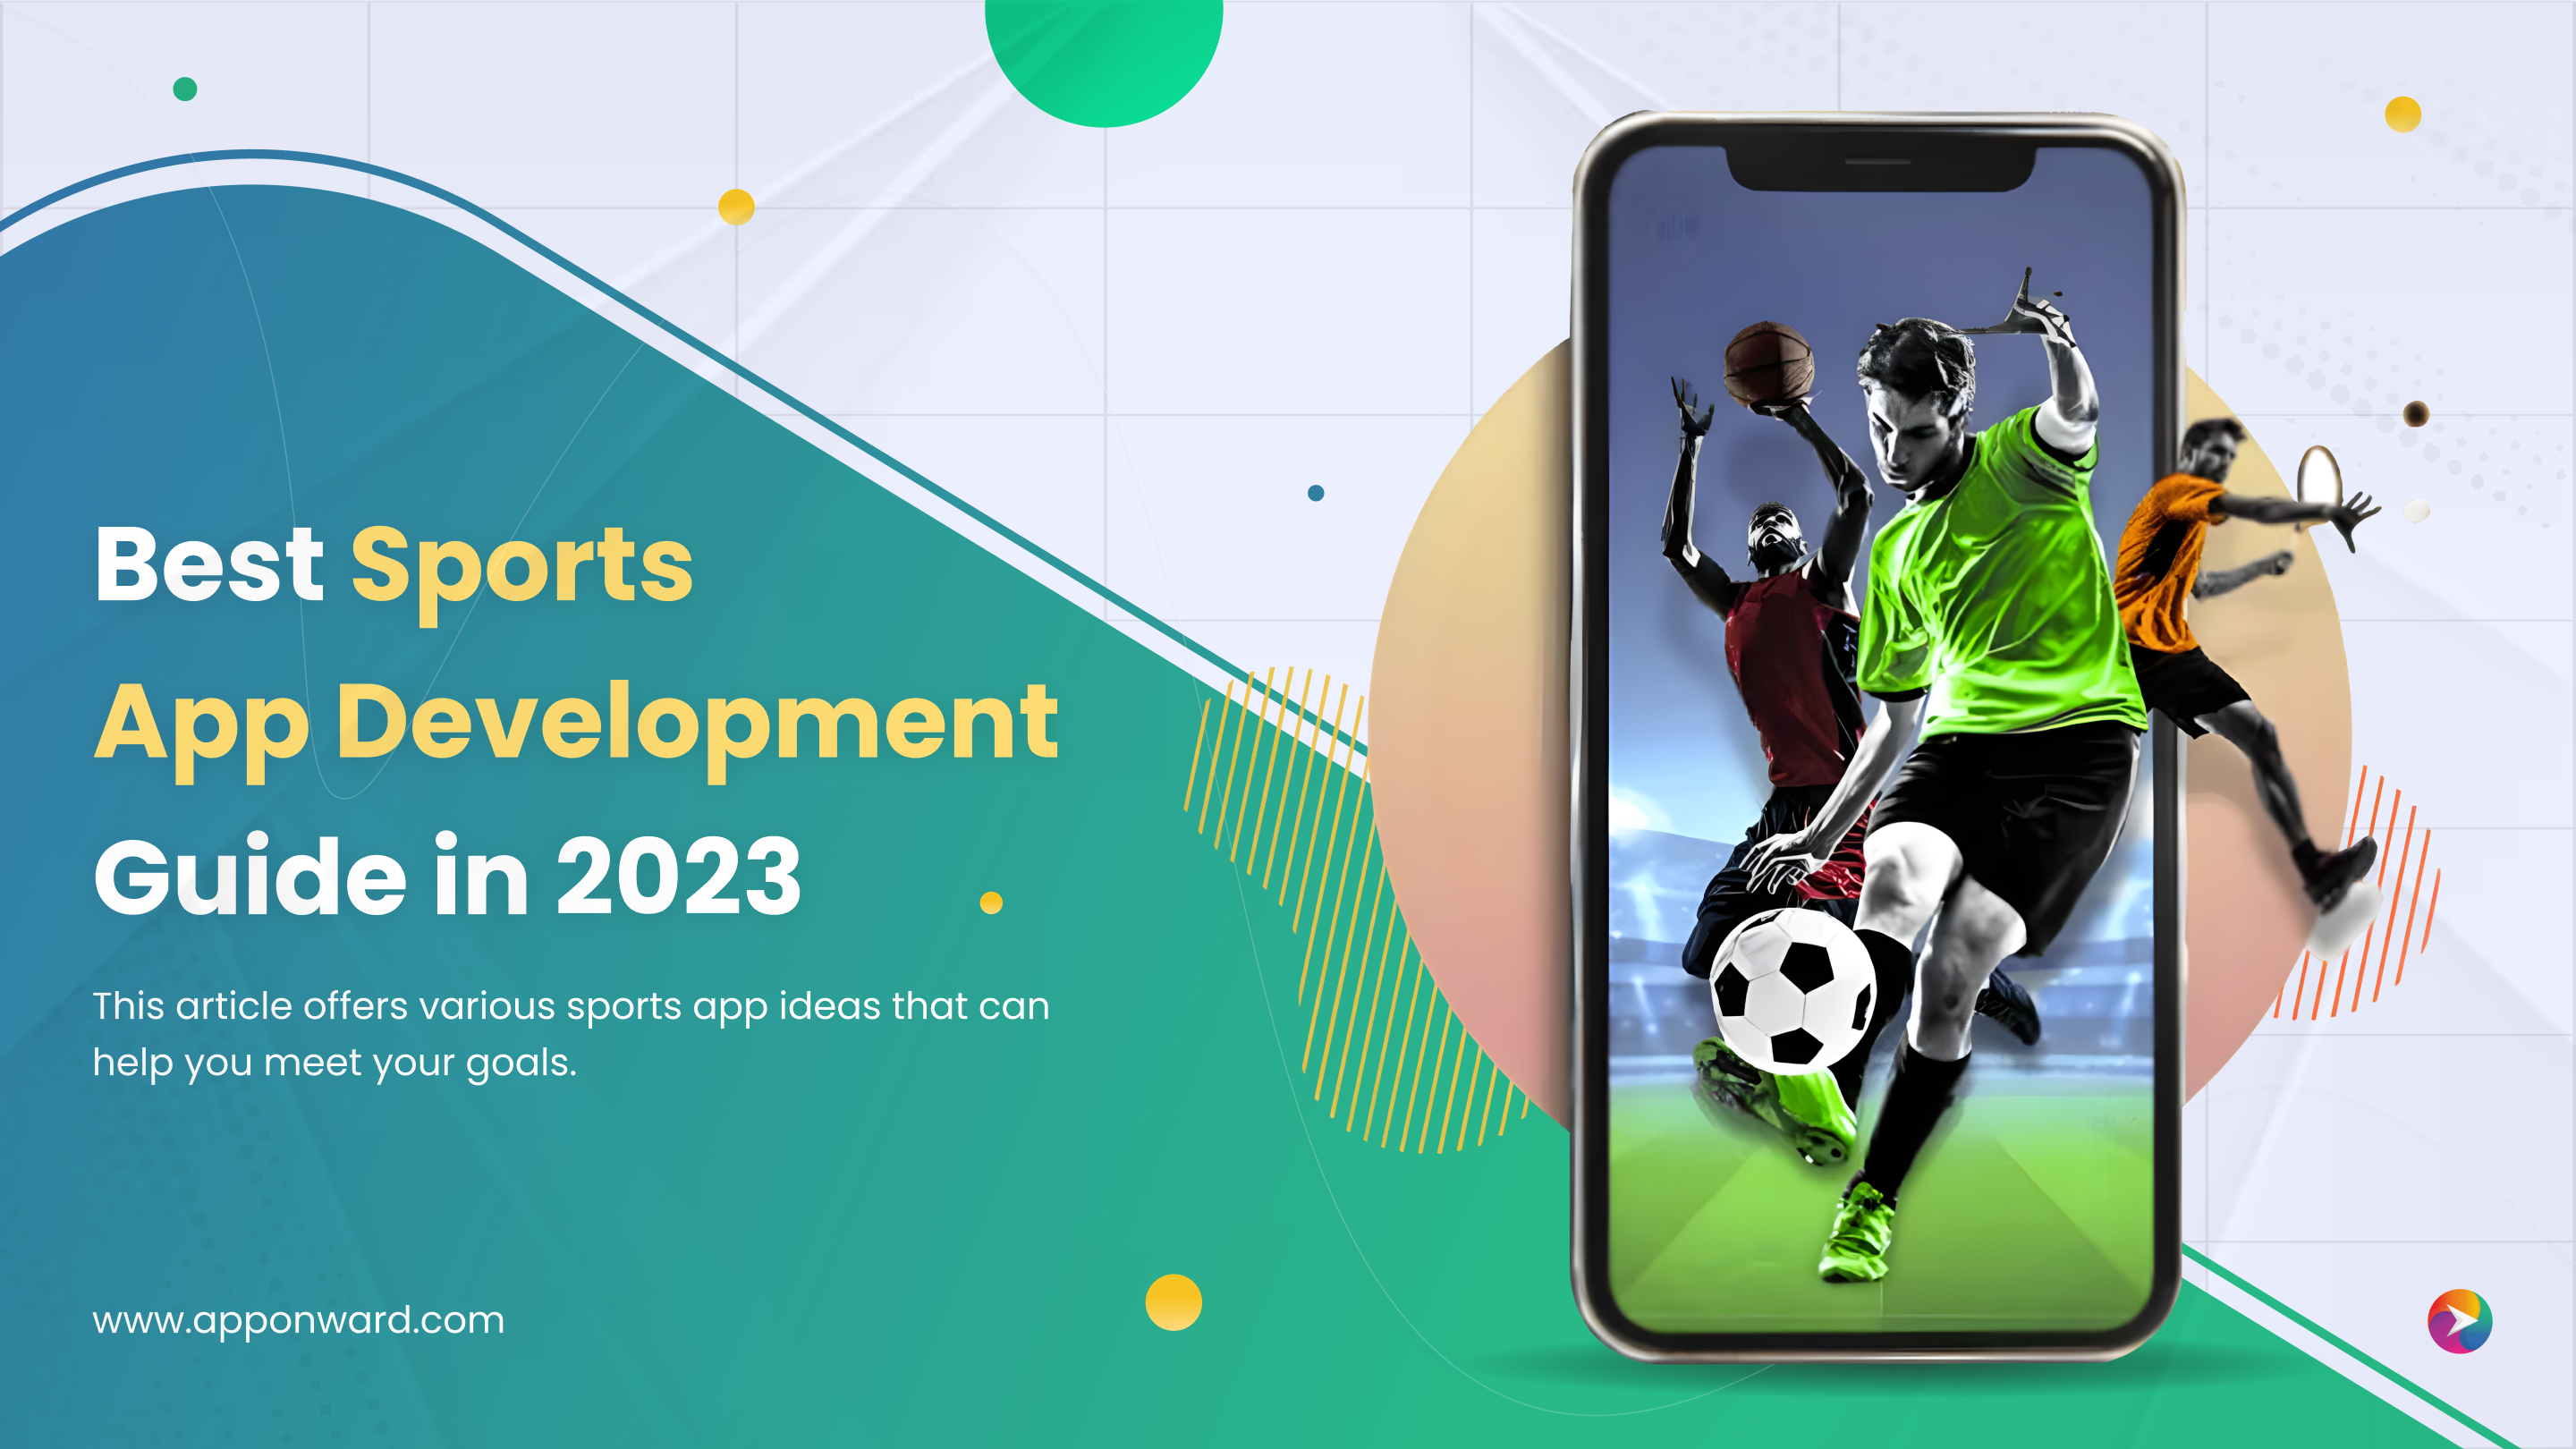 Best Sports App Development Guide in 2023